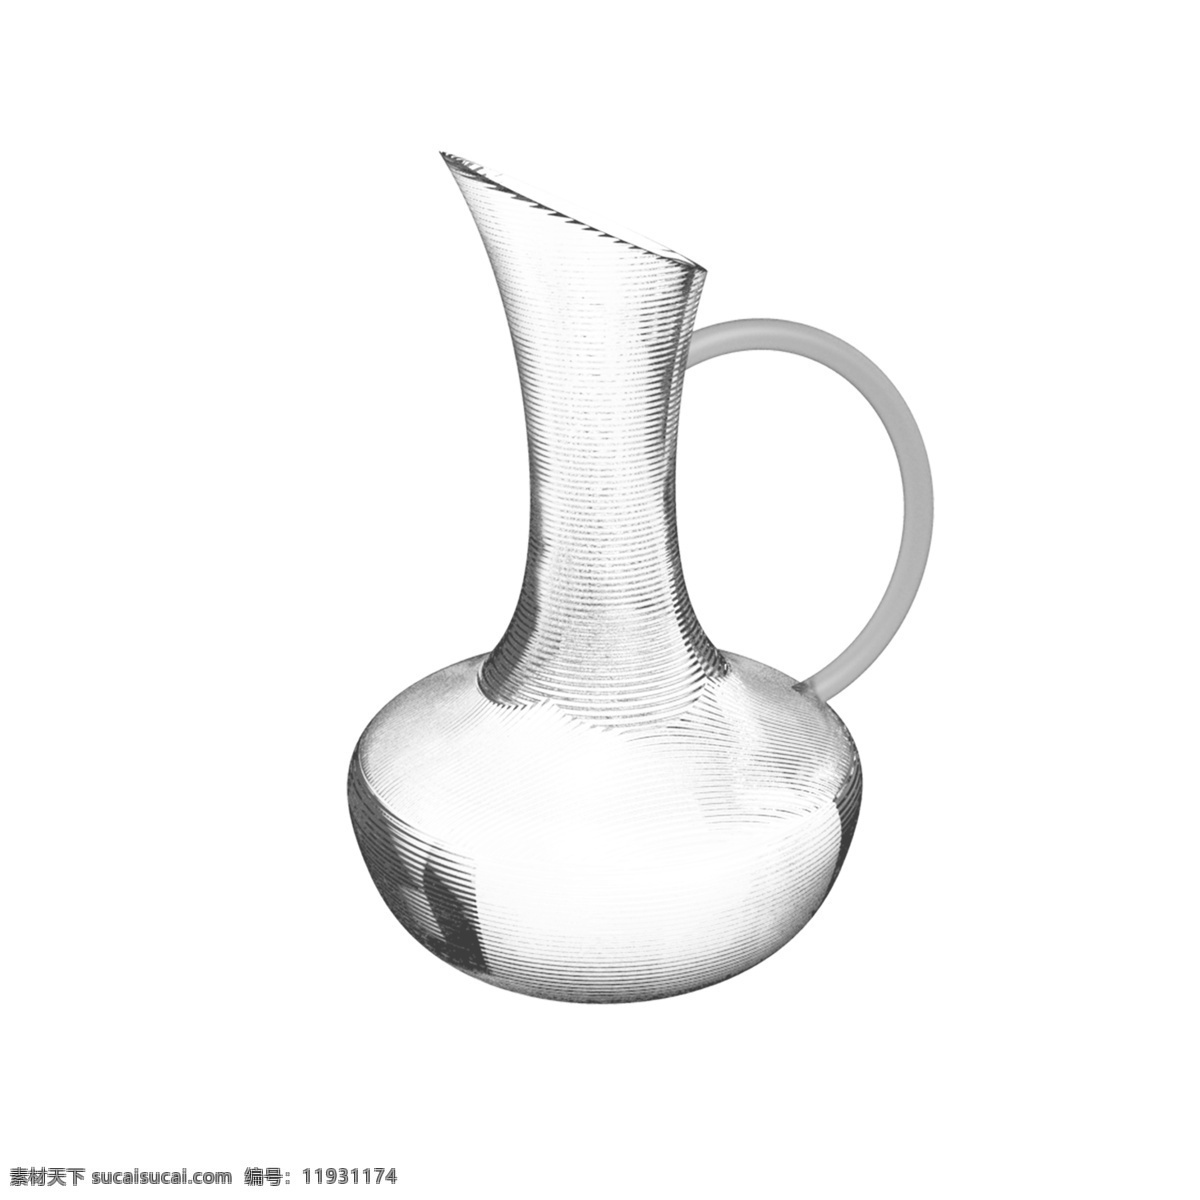 醒 酒器 玻璃 容器 免 抠 图案 杯子 玻璃器皿 花瓶 玻璃杯 透明玻璃杯 玻璃容器 家居用品 透明材质